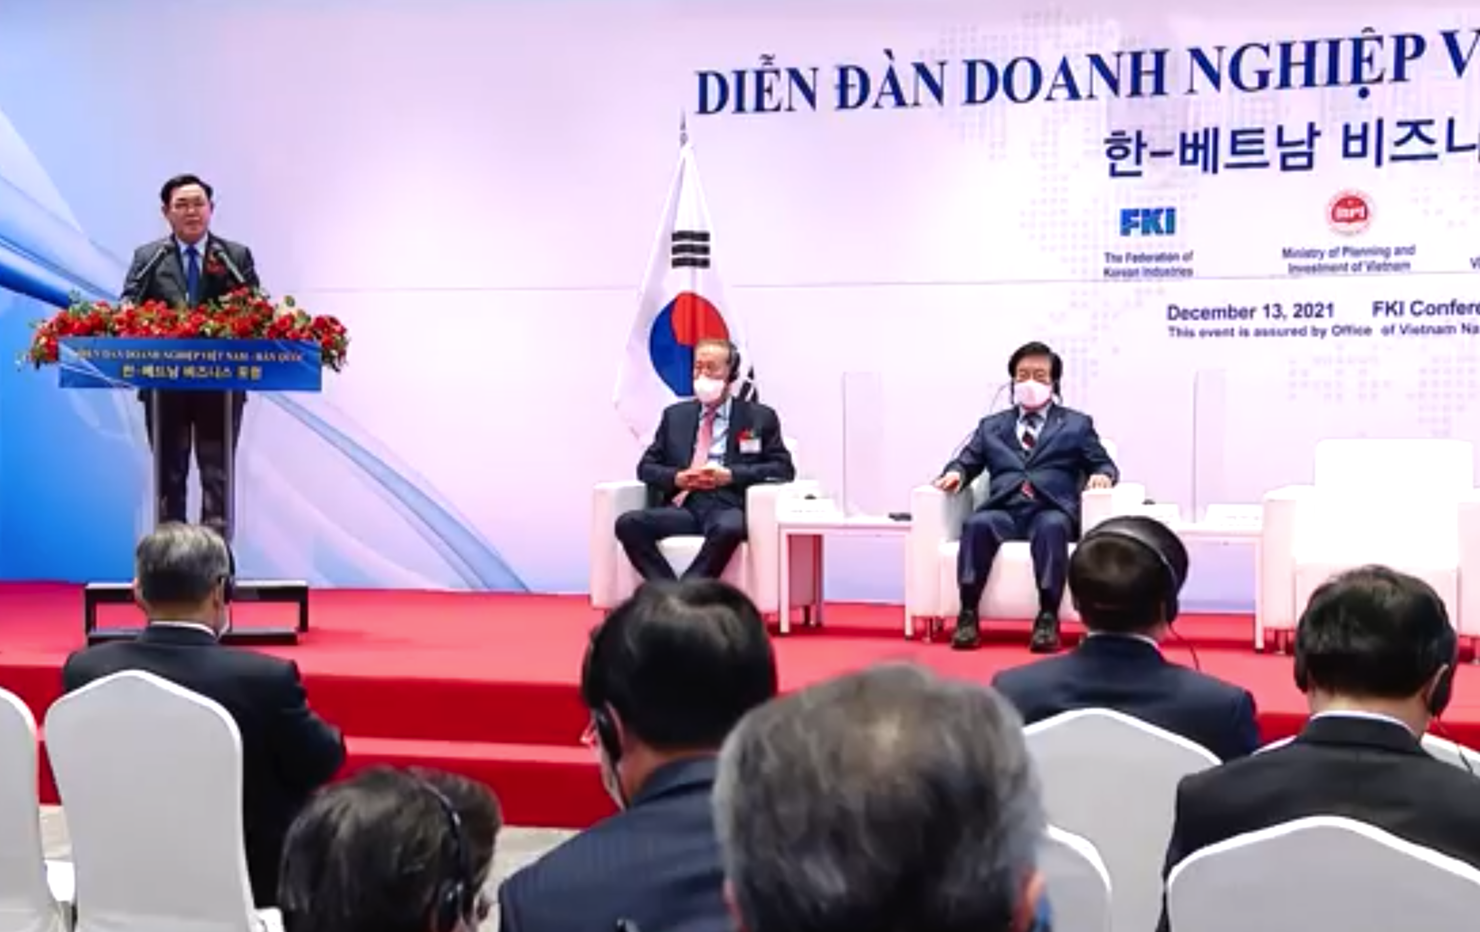 Chủ tịch Quốc hội Vương Đình Huệ phát biểu tại Diễn đàn doanh nghiệp Việt Nam - Hàn Quốc.